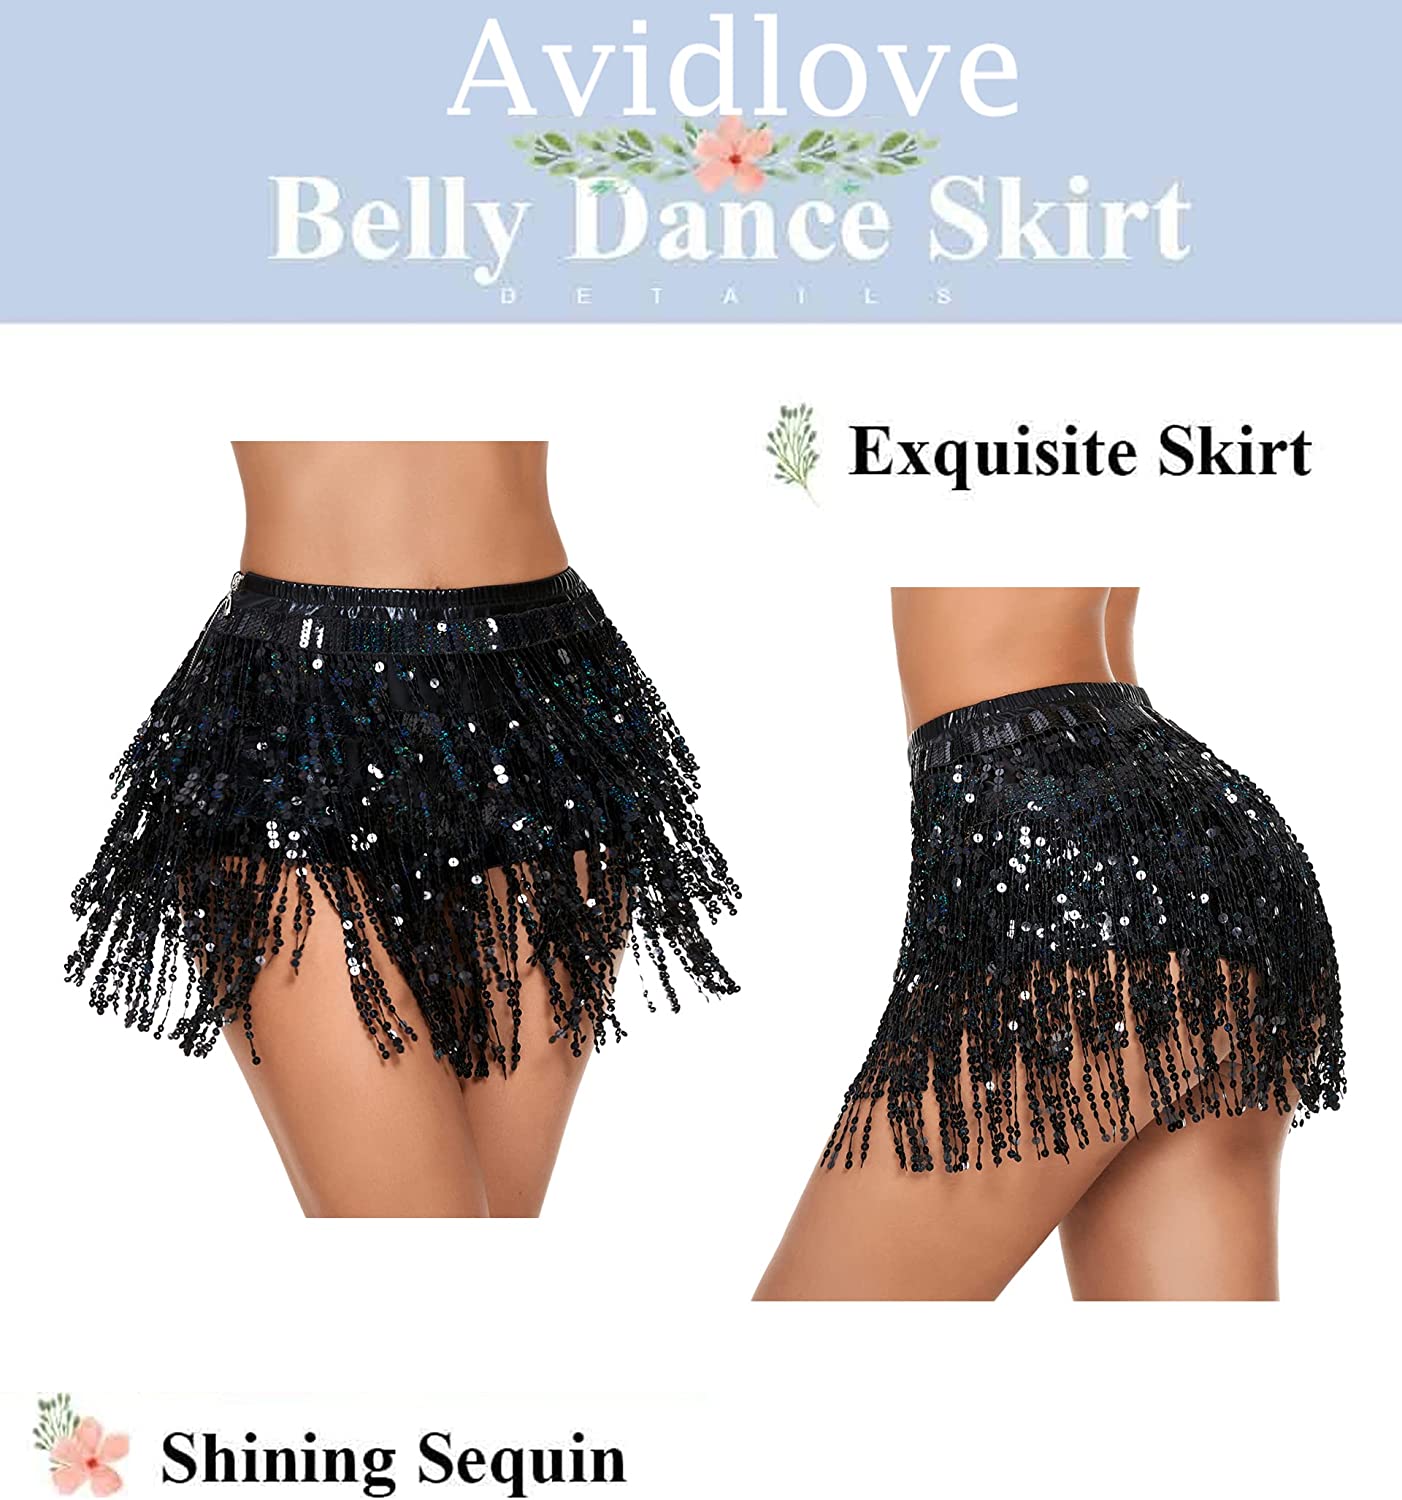 Avidlove Sequin Tassel Skirt Belly Dance Belt Dance Performance Skirt Party Rave Skirt for Women